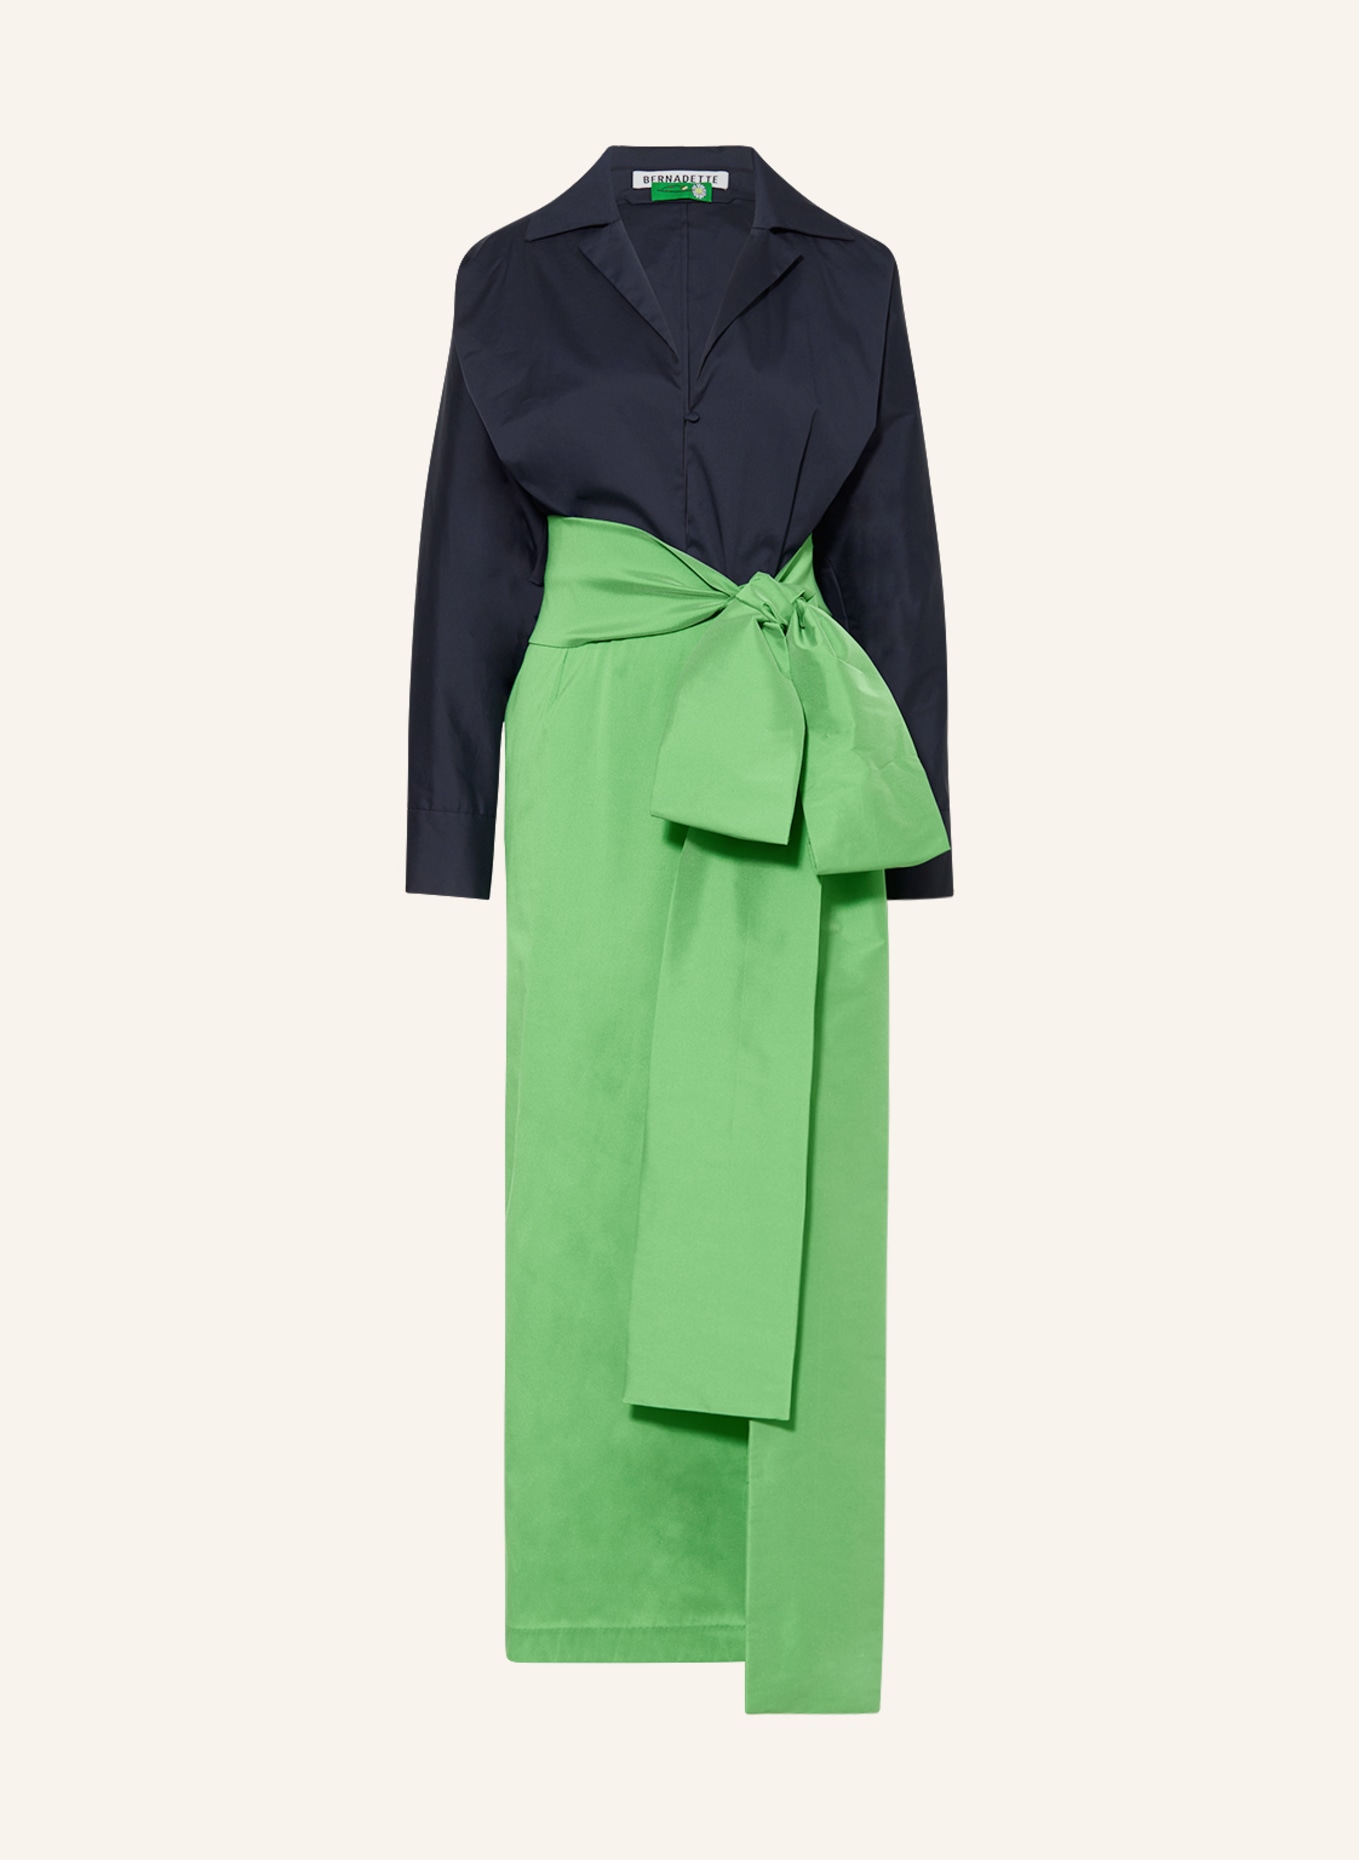 BERNADETTE Kleid CLAIRE, Farbe: DUNKELBLAU/ GRÜN (Bild 1)